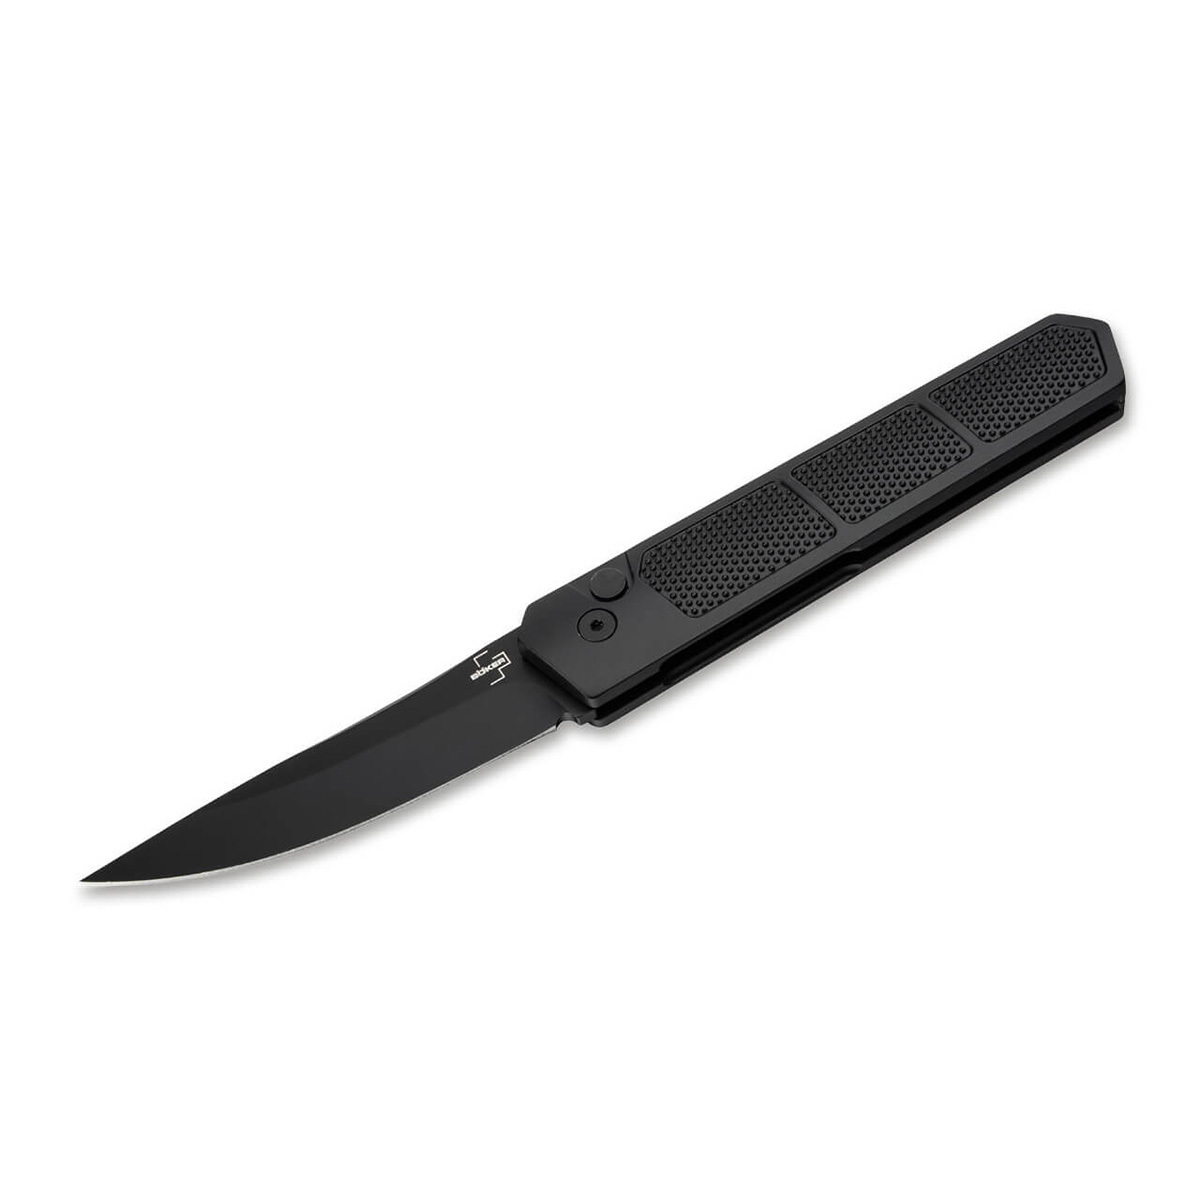 Складной нож Boker Kwaiken Grip Auto Black, сталь D2, рукоять алюминиевый сплав